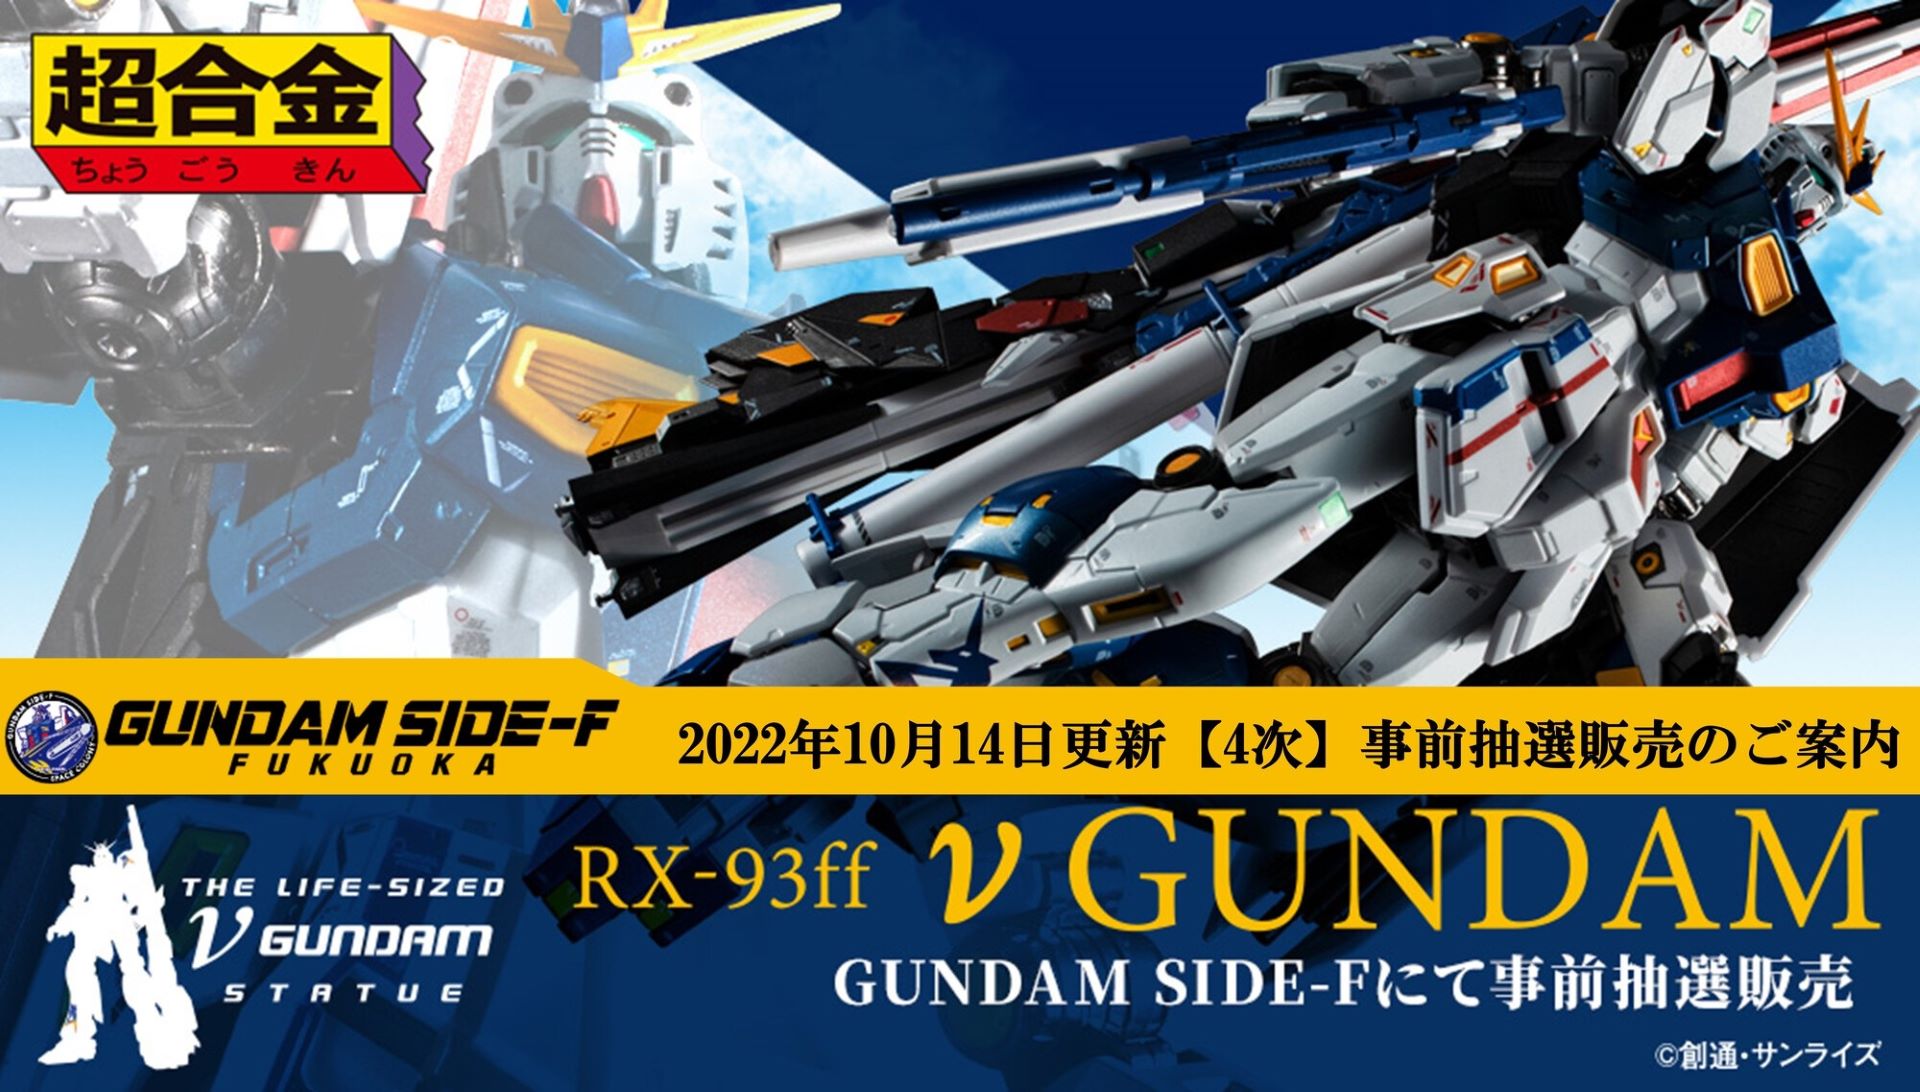 GUNDAM SIDE-F、「超合金 RX-93ff νガンダム」の4次抽選販売の受付開始